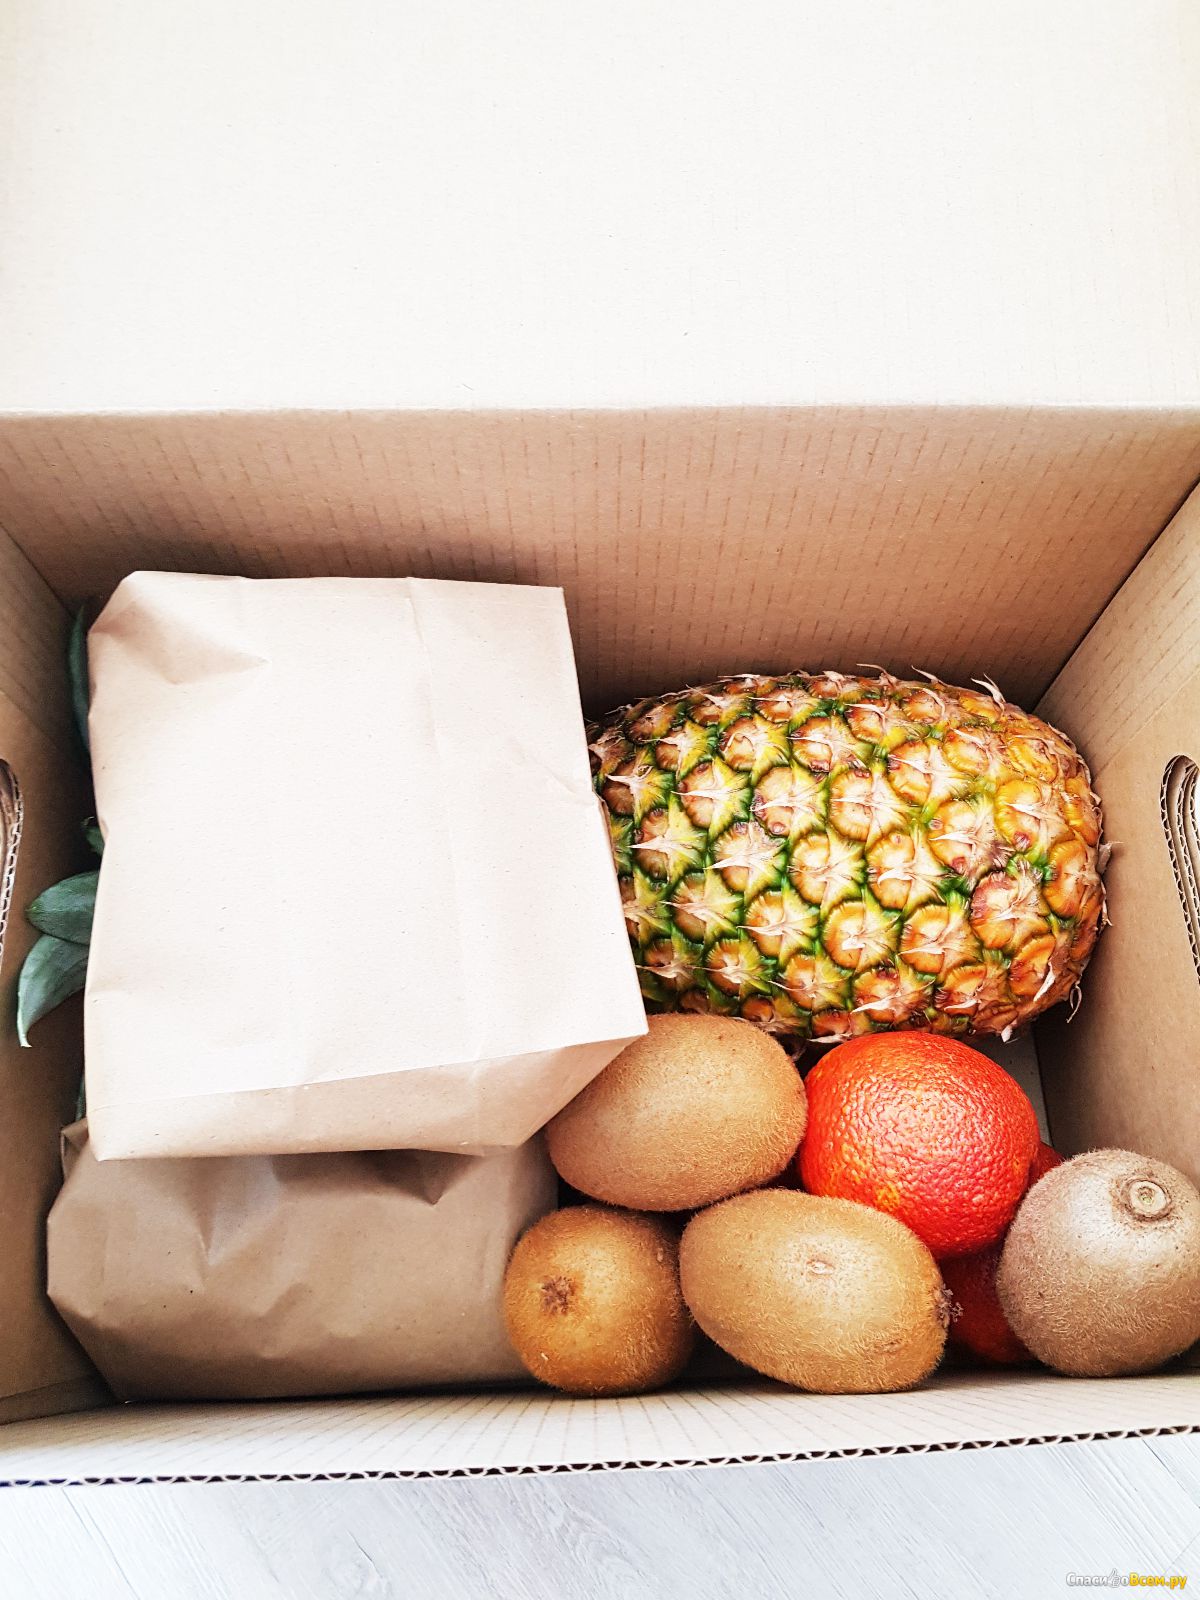 Фрукты с доставкой на дом. Коробочка фруктов. Коробки с фруктами. Фрукты в коробке. Овощи в коробке.